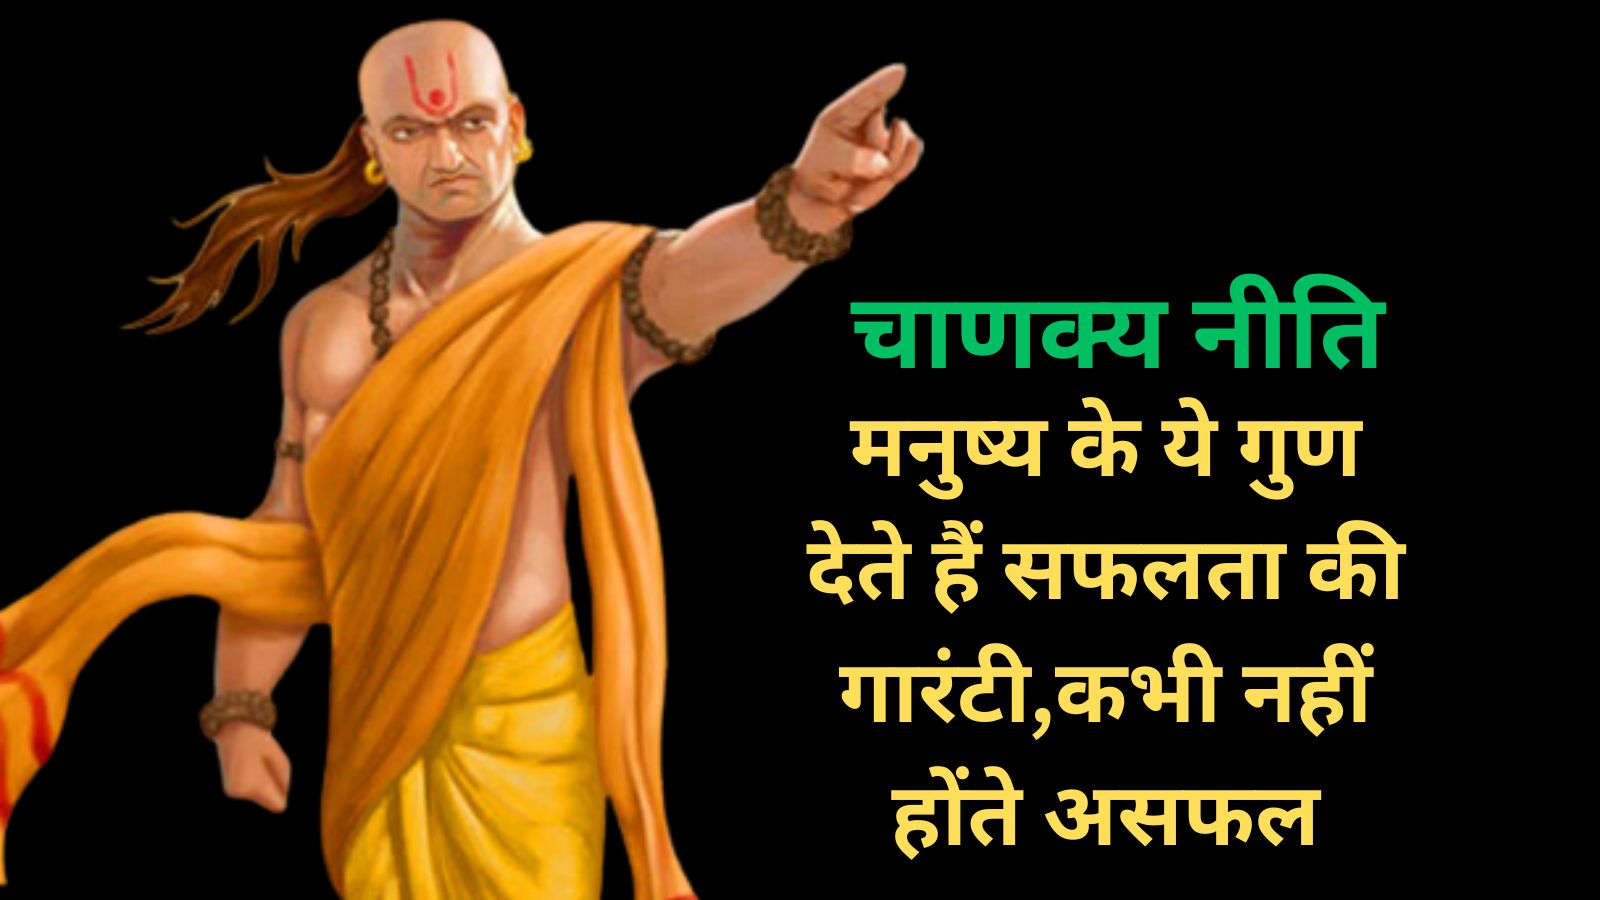 Chanakya Niti:मनुष्य के ये गुण देते हैं सफलता की गारंटी,कभी नहीं होंते असफल